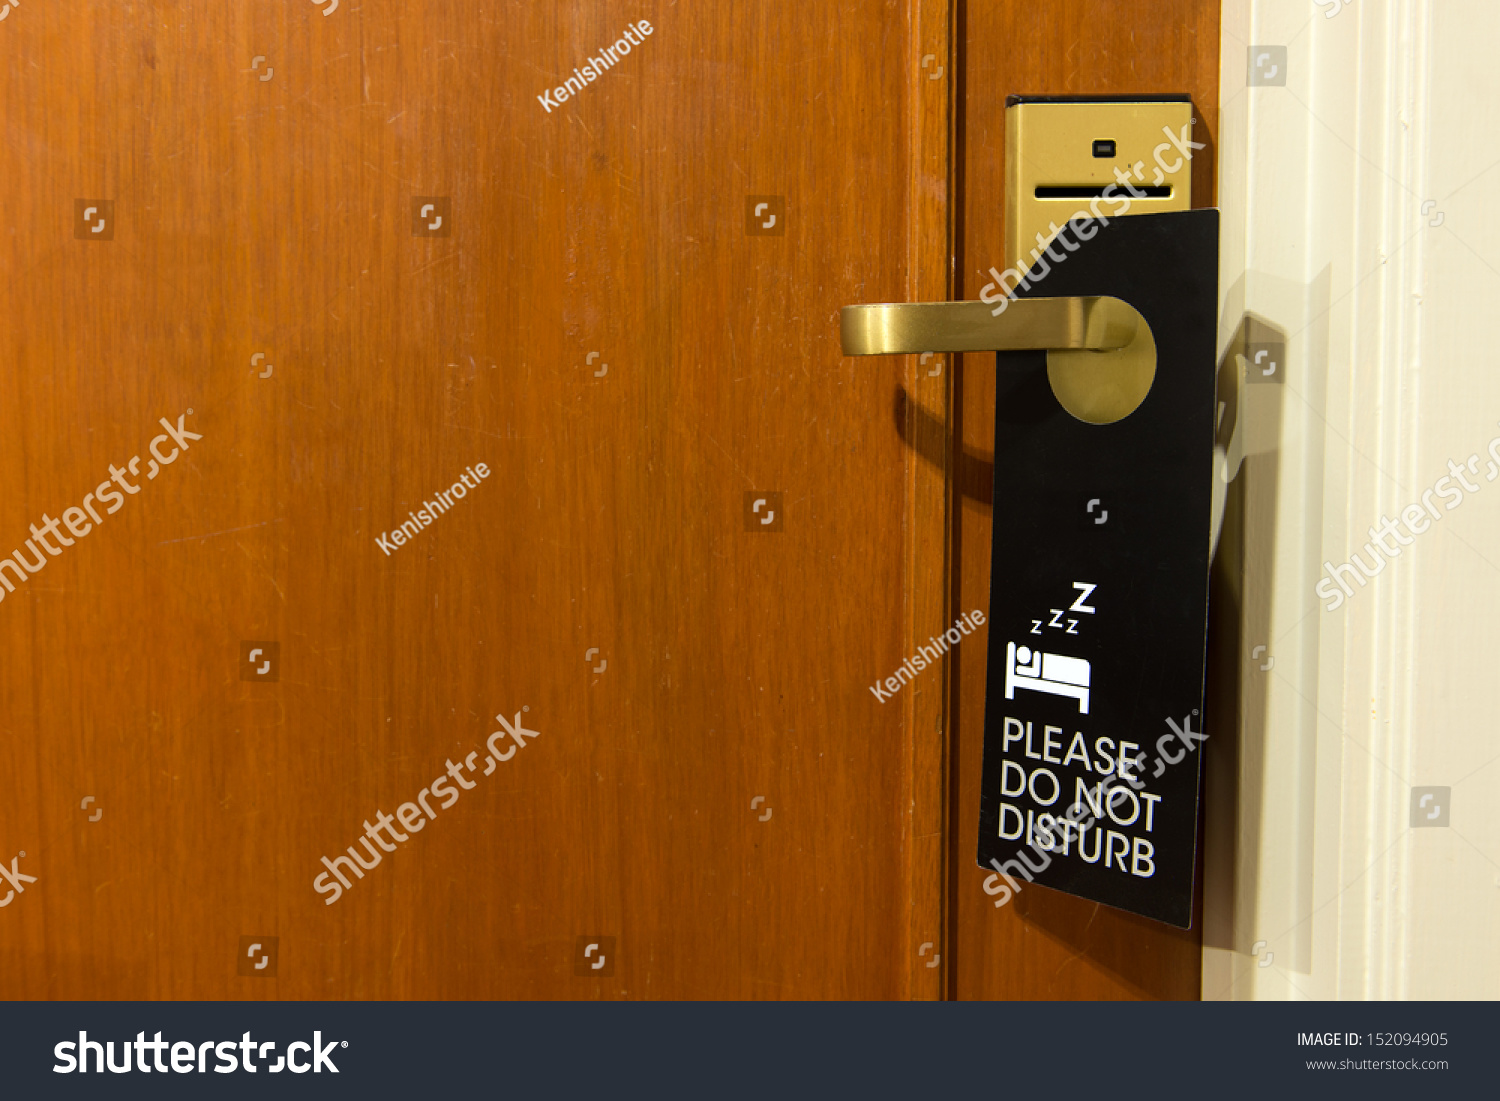 do-not-disturb-sign-hang-on-door-knob-stock-photo-152094905-shutterstock